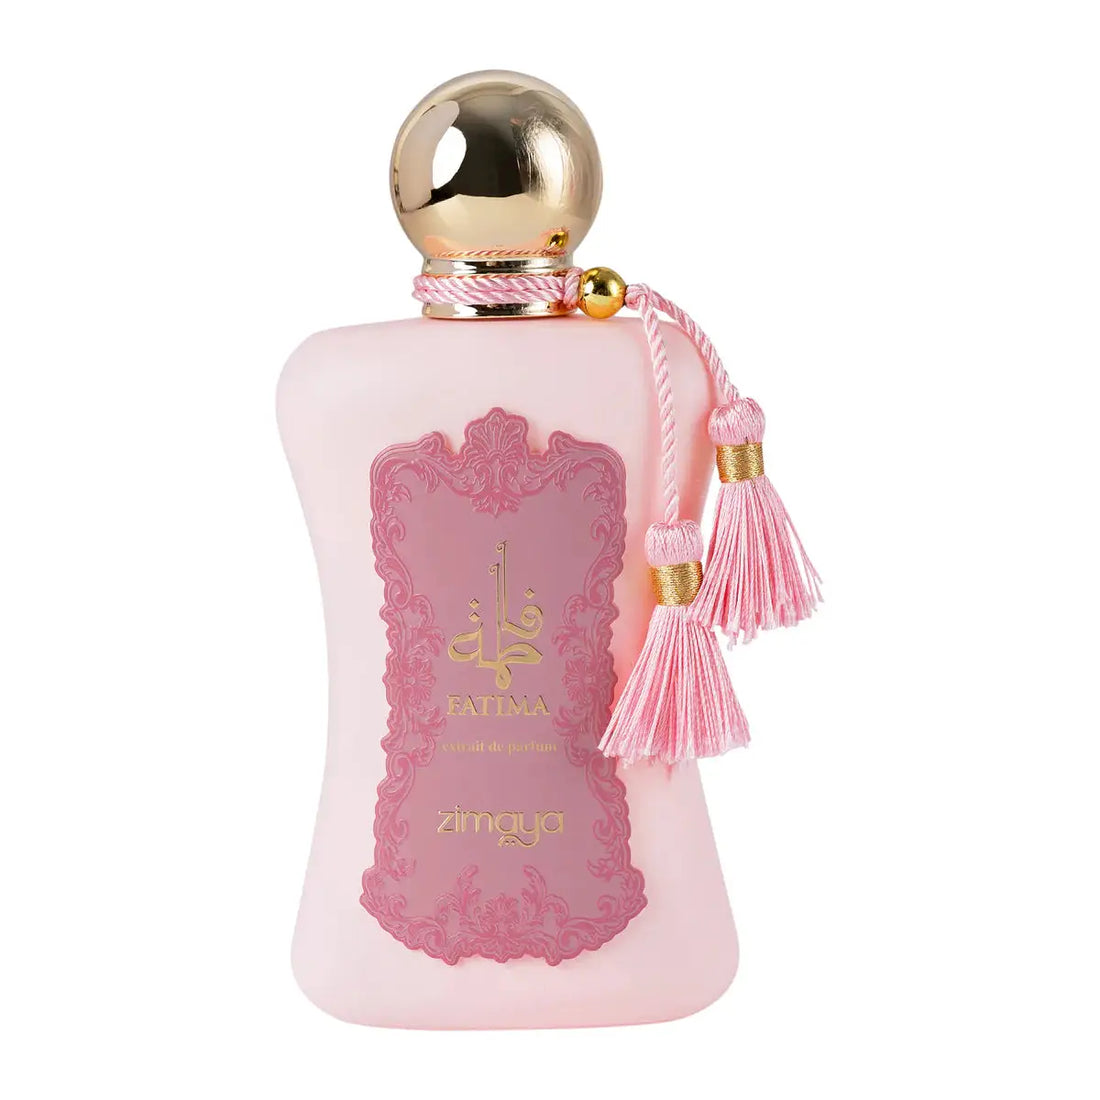 Zimaya Fatima Perfume For Women's - Extrait De Parfum 100ML